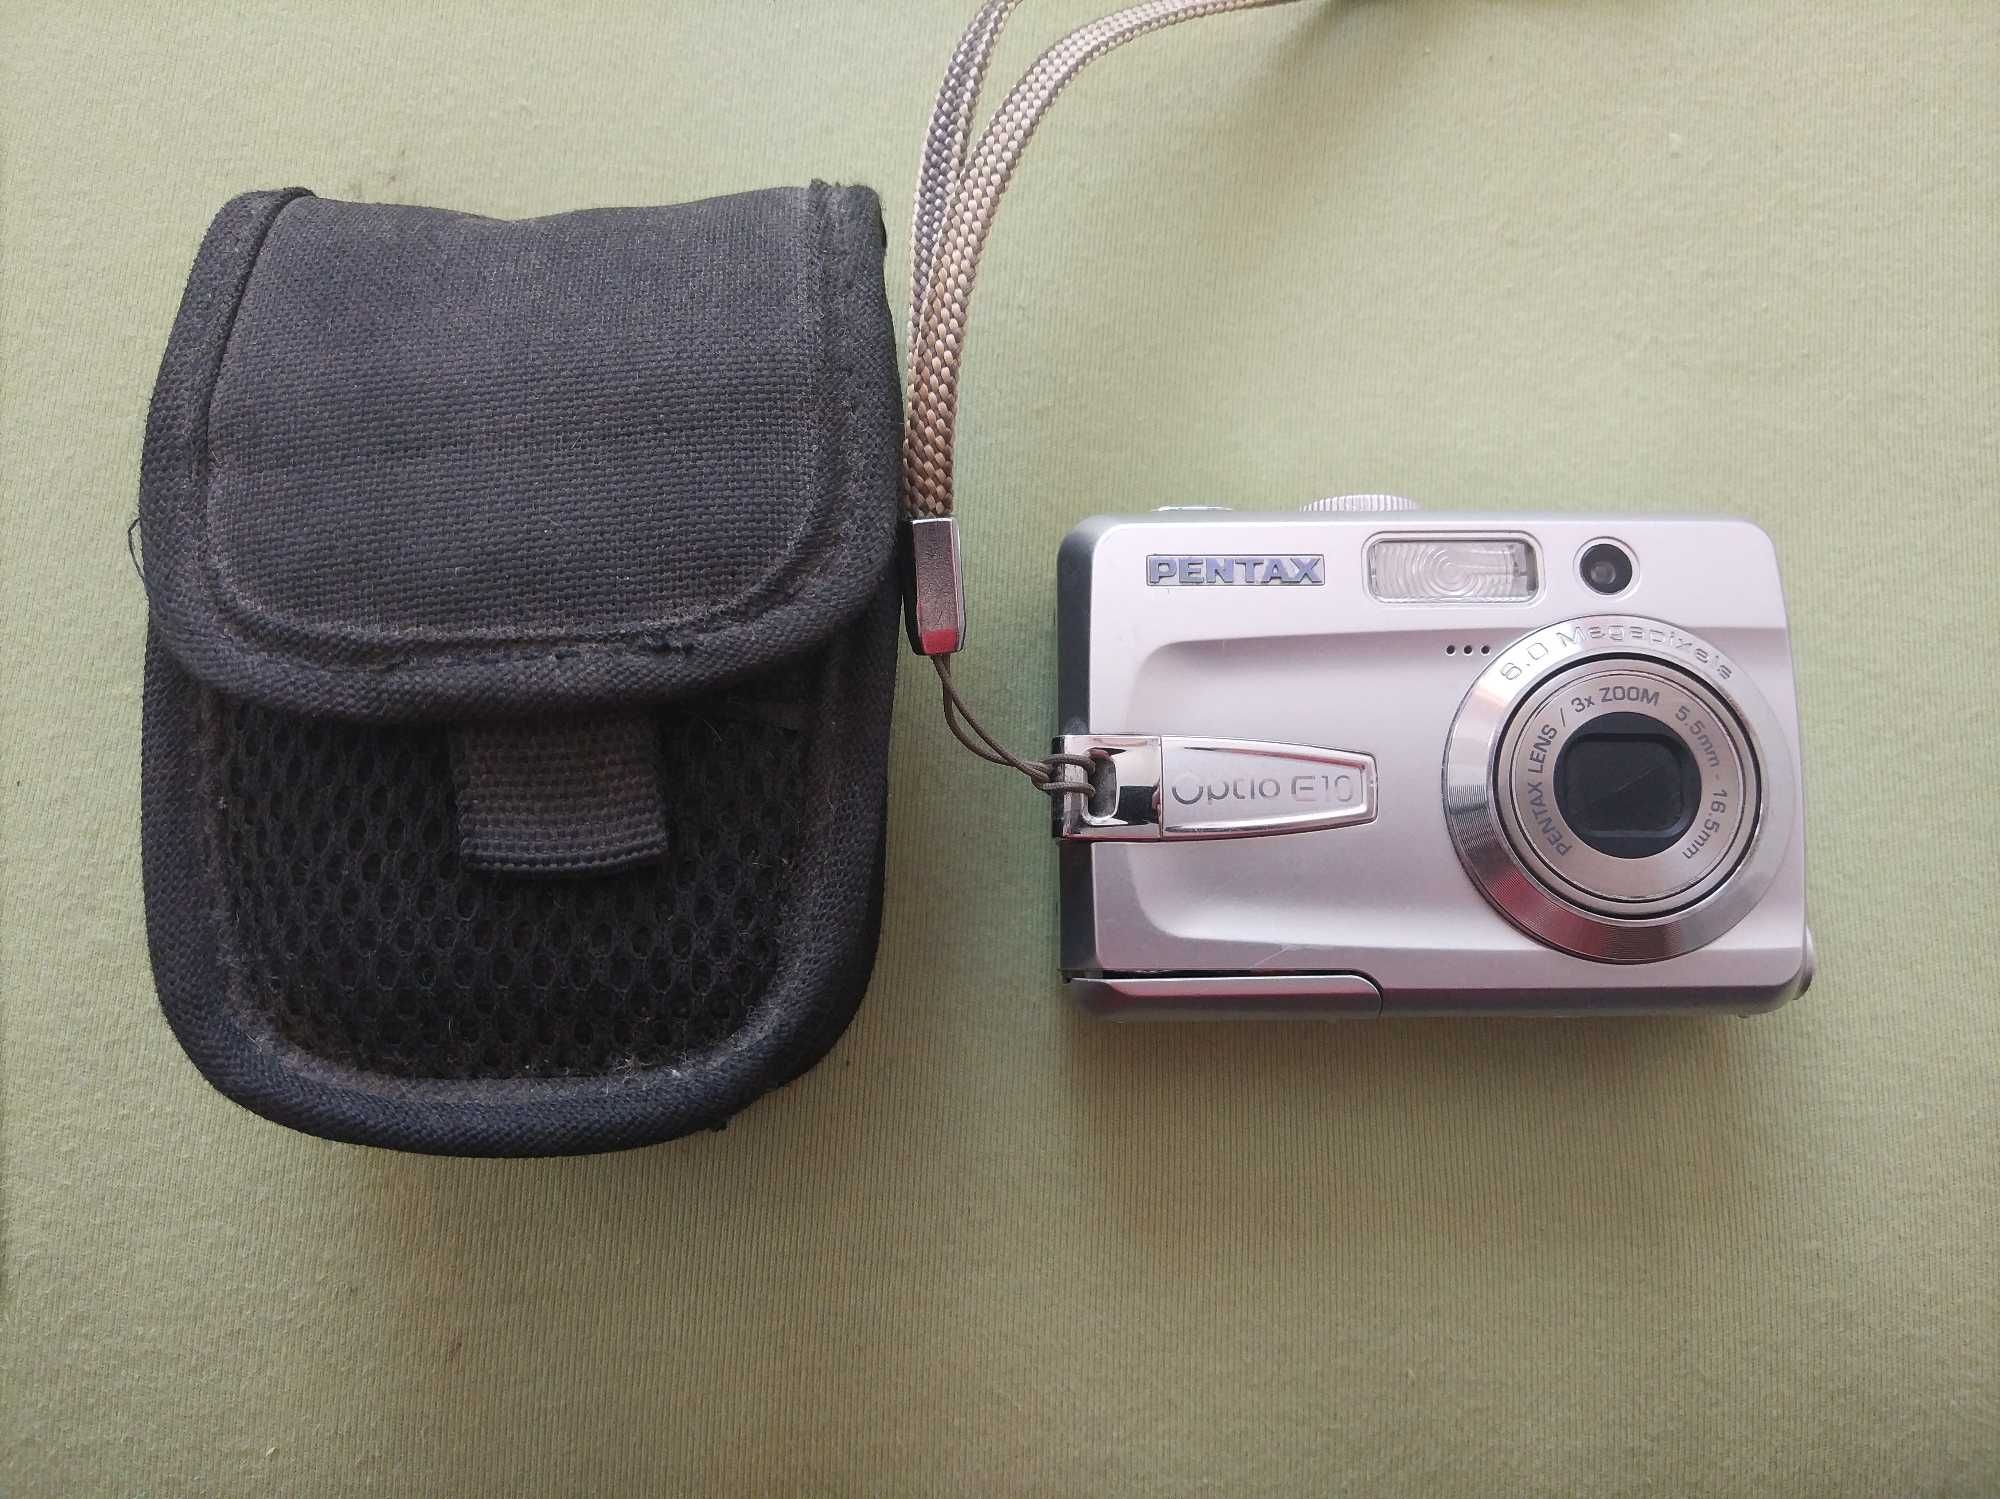 Pentax Optio E10, aparat fotograficzny, uszkodzony